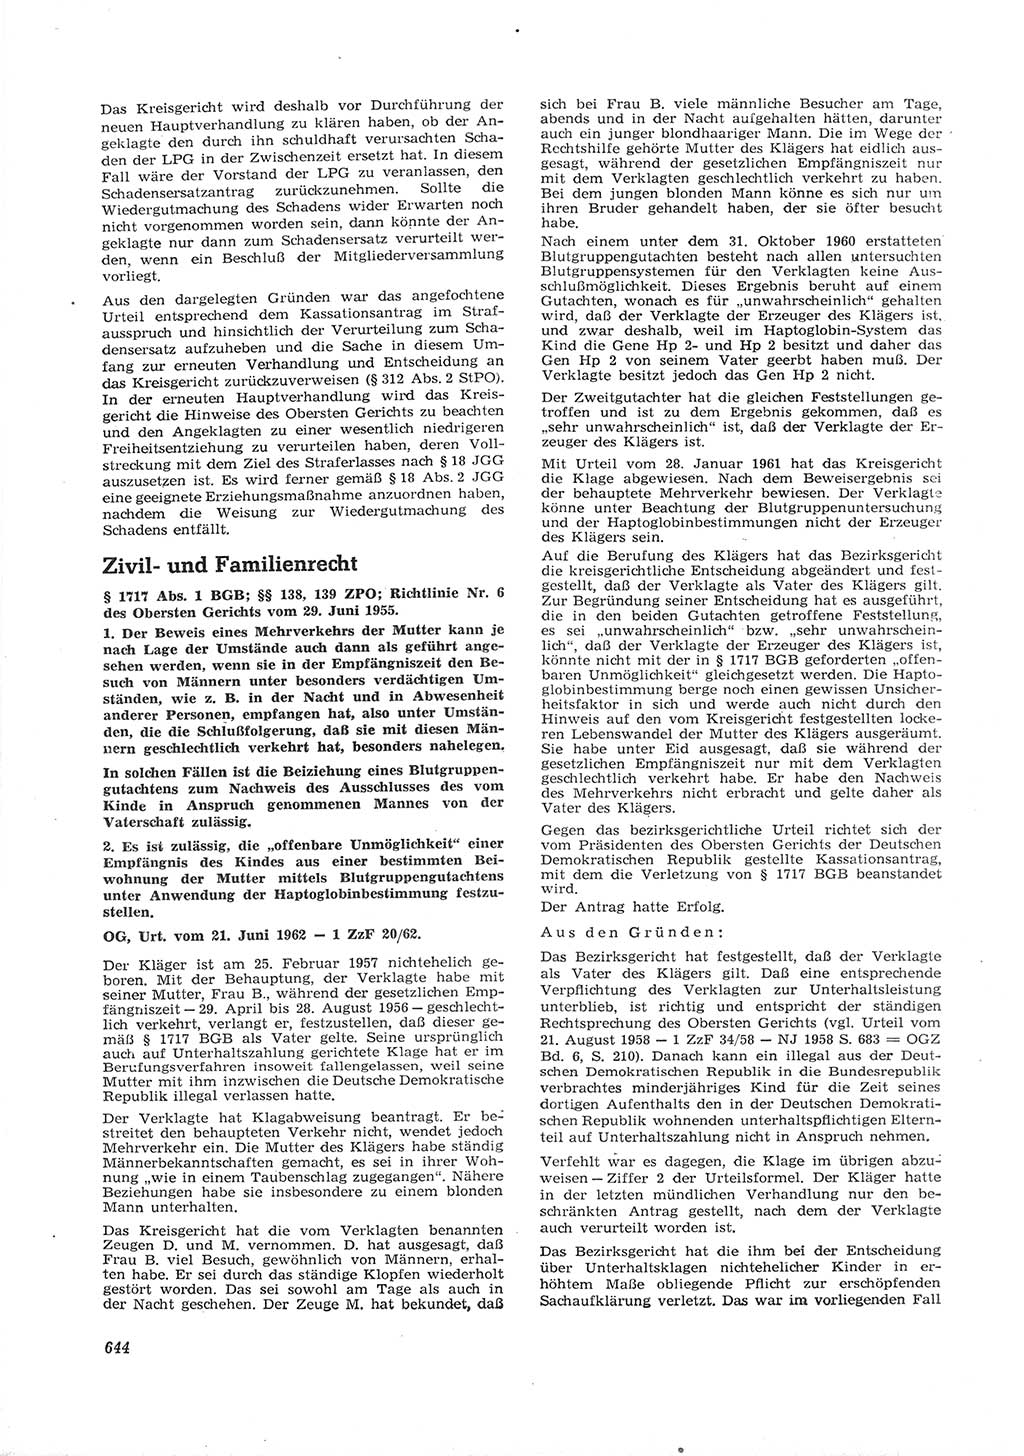 Neue Justiz (NJ), Zeitschrift für Recht und Rechtswissenschaft [Deutsche Demokratische Republik (DDR)], 16. Jahrgang 1962, Seite 644 (NJ DDR 1962, S. 644)